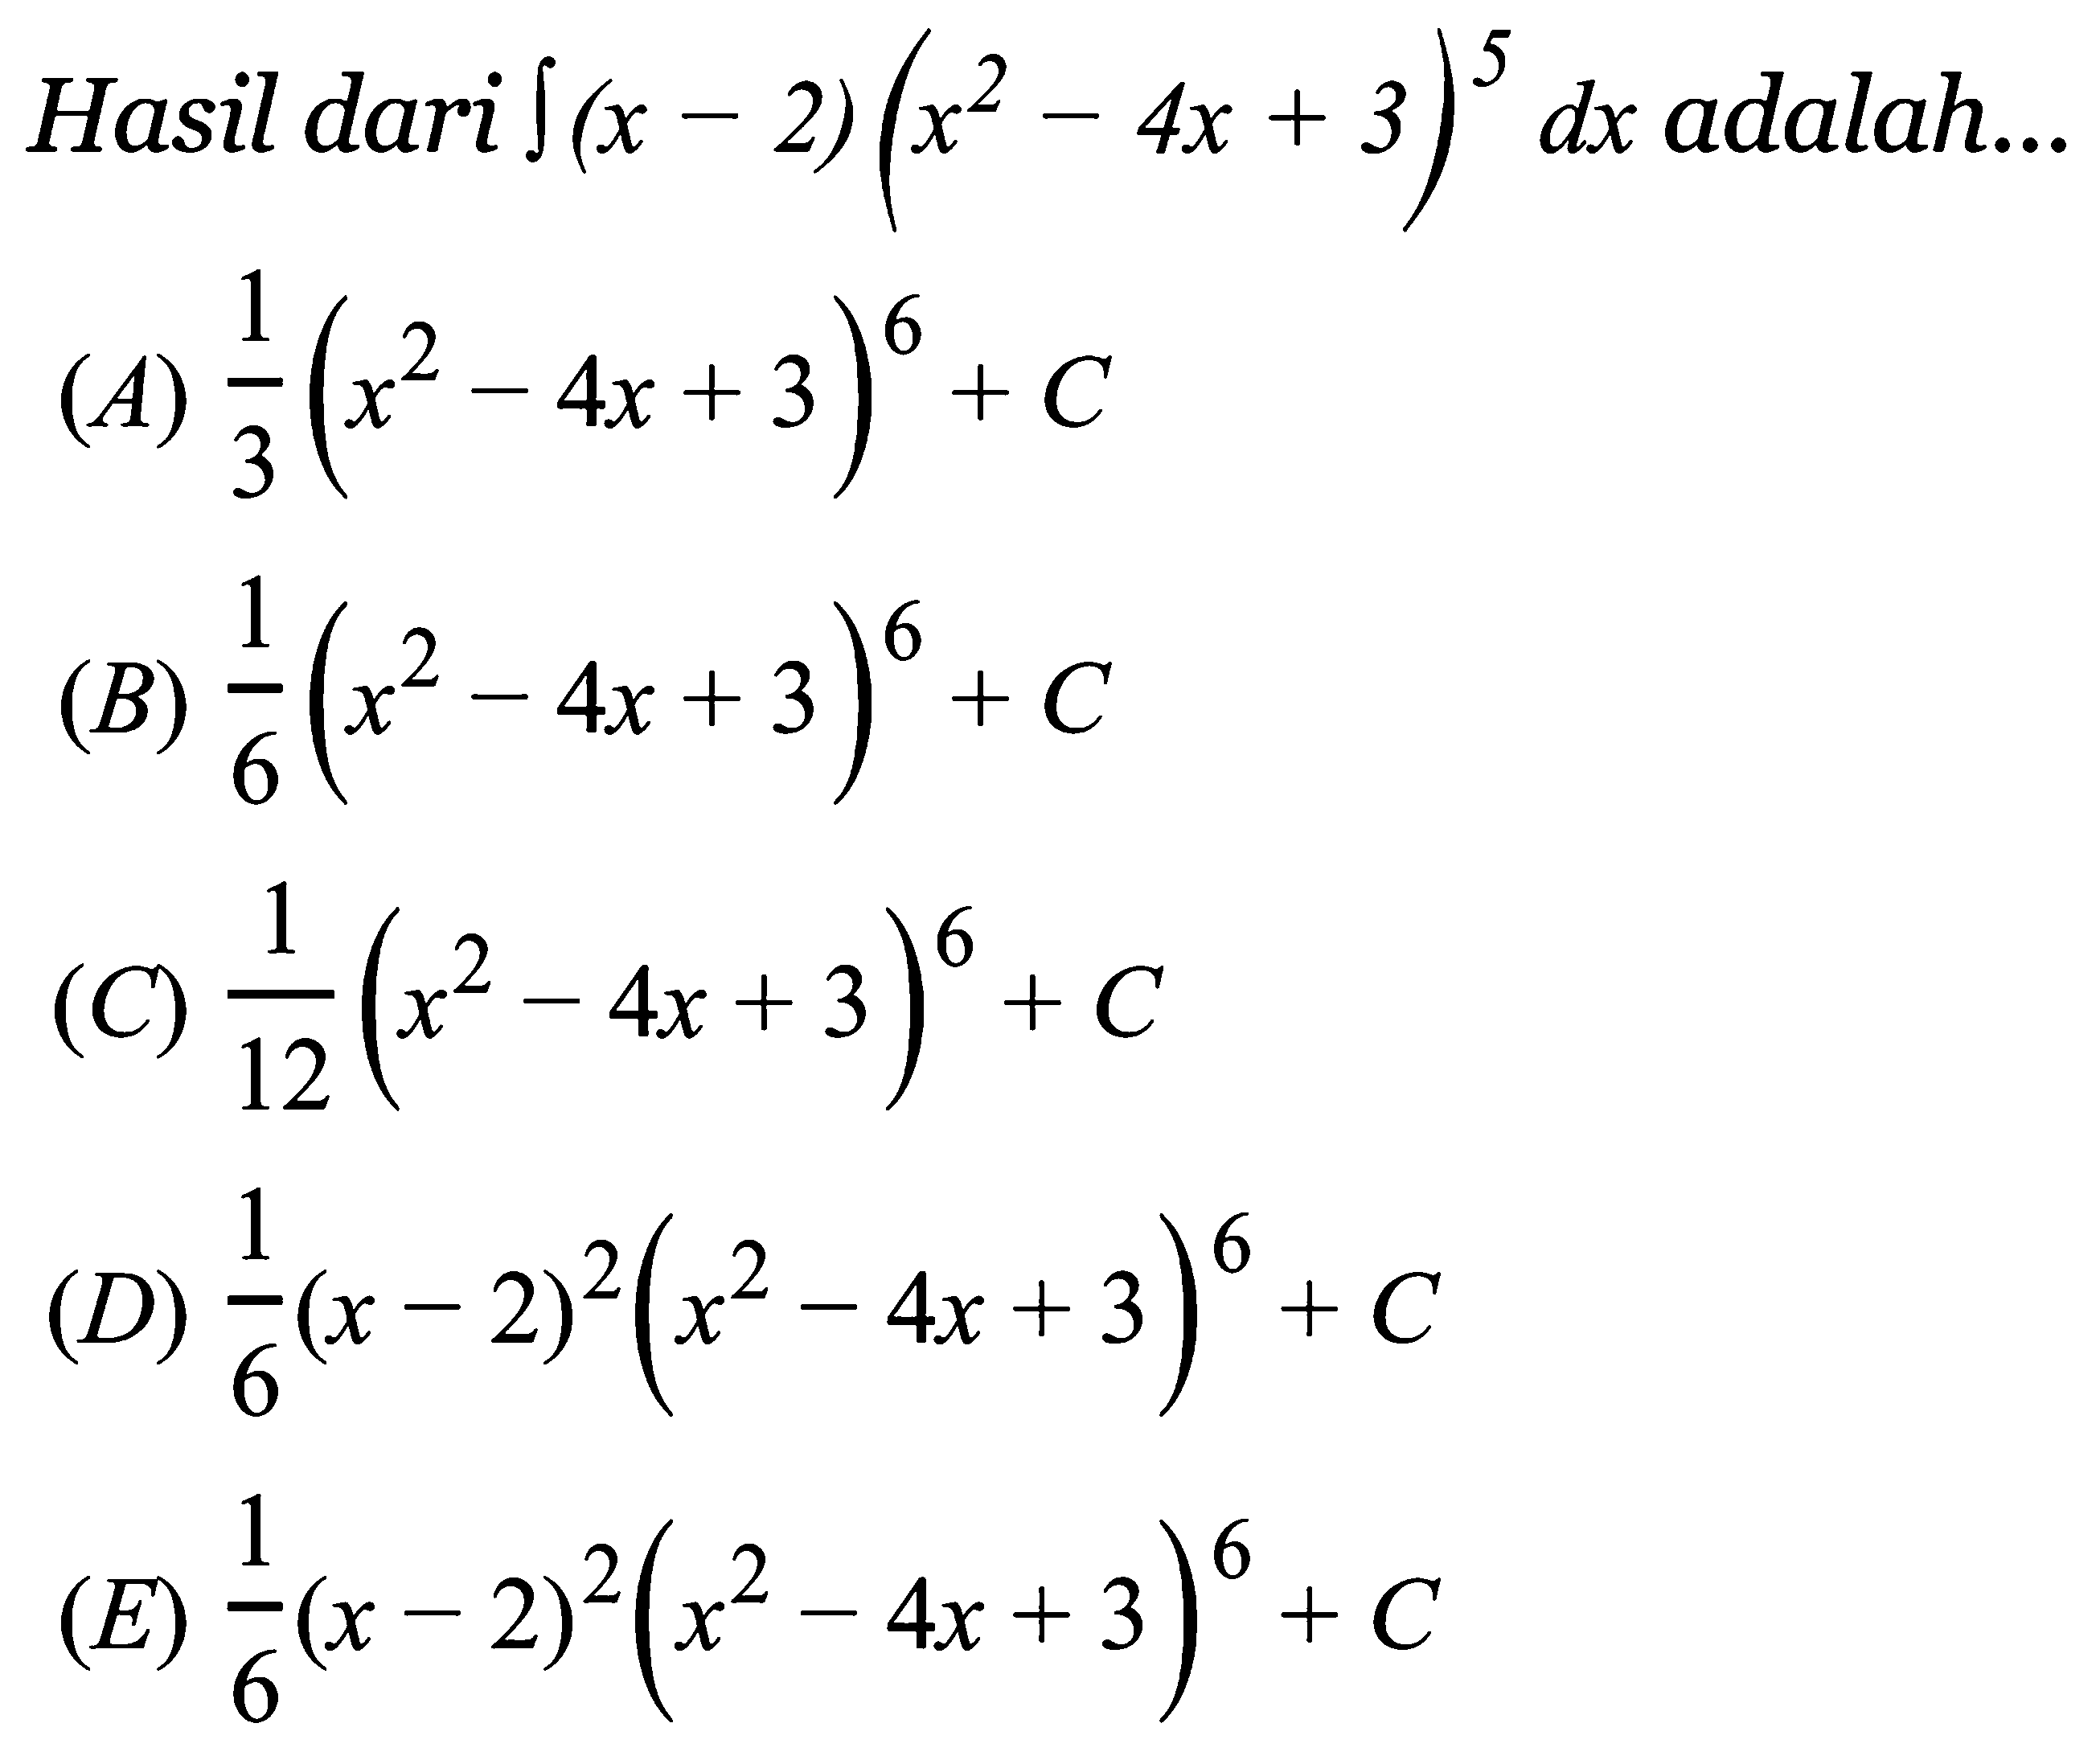 Hasil dari integral (x-2)(x^2-4x+3)^5 dx adalah...